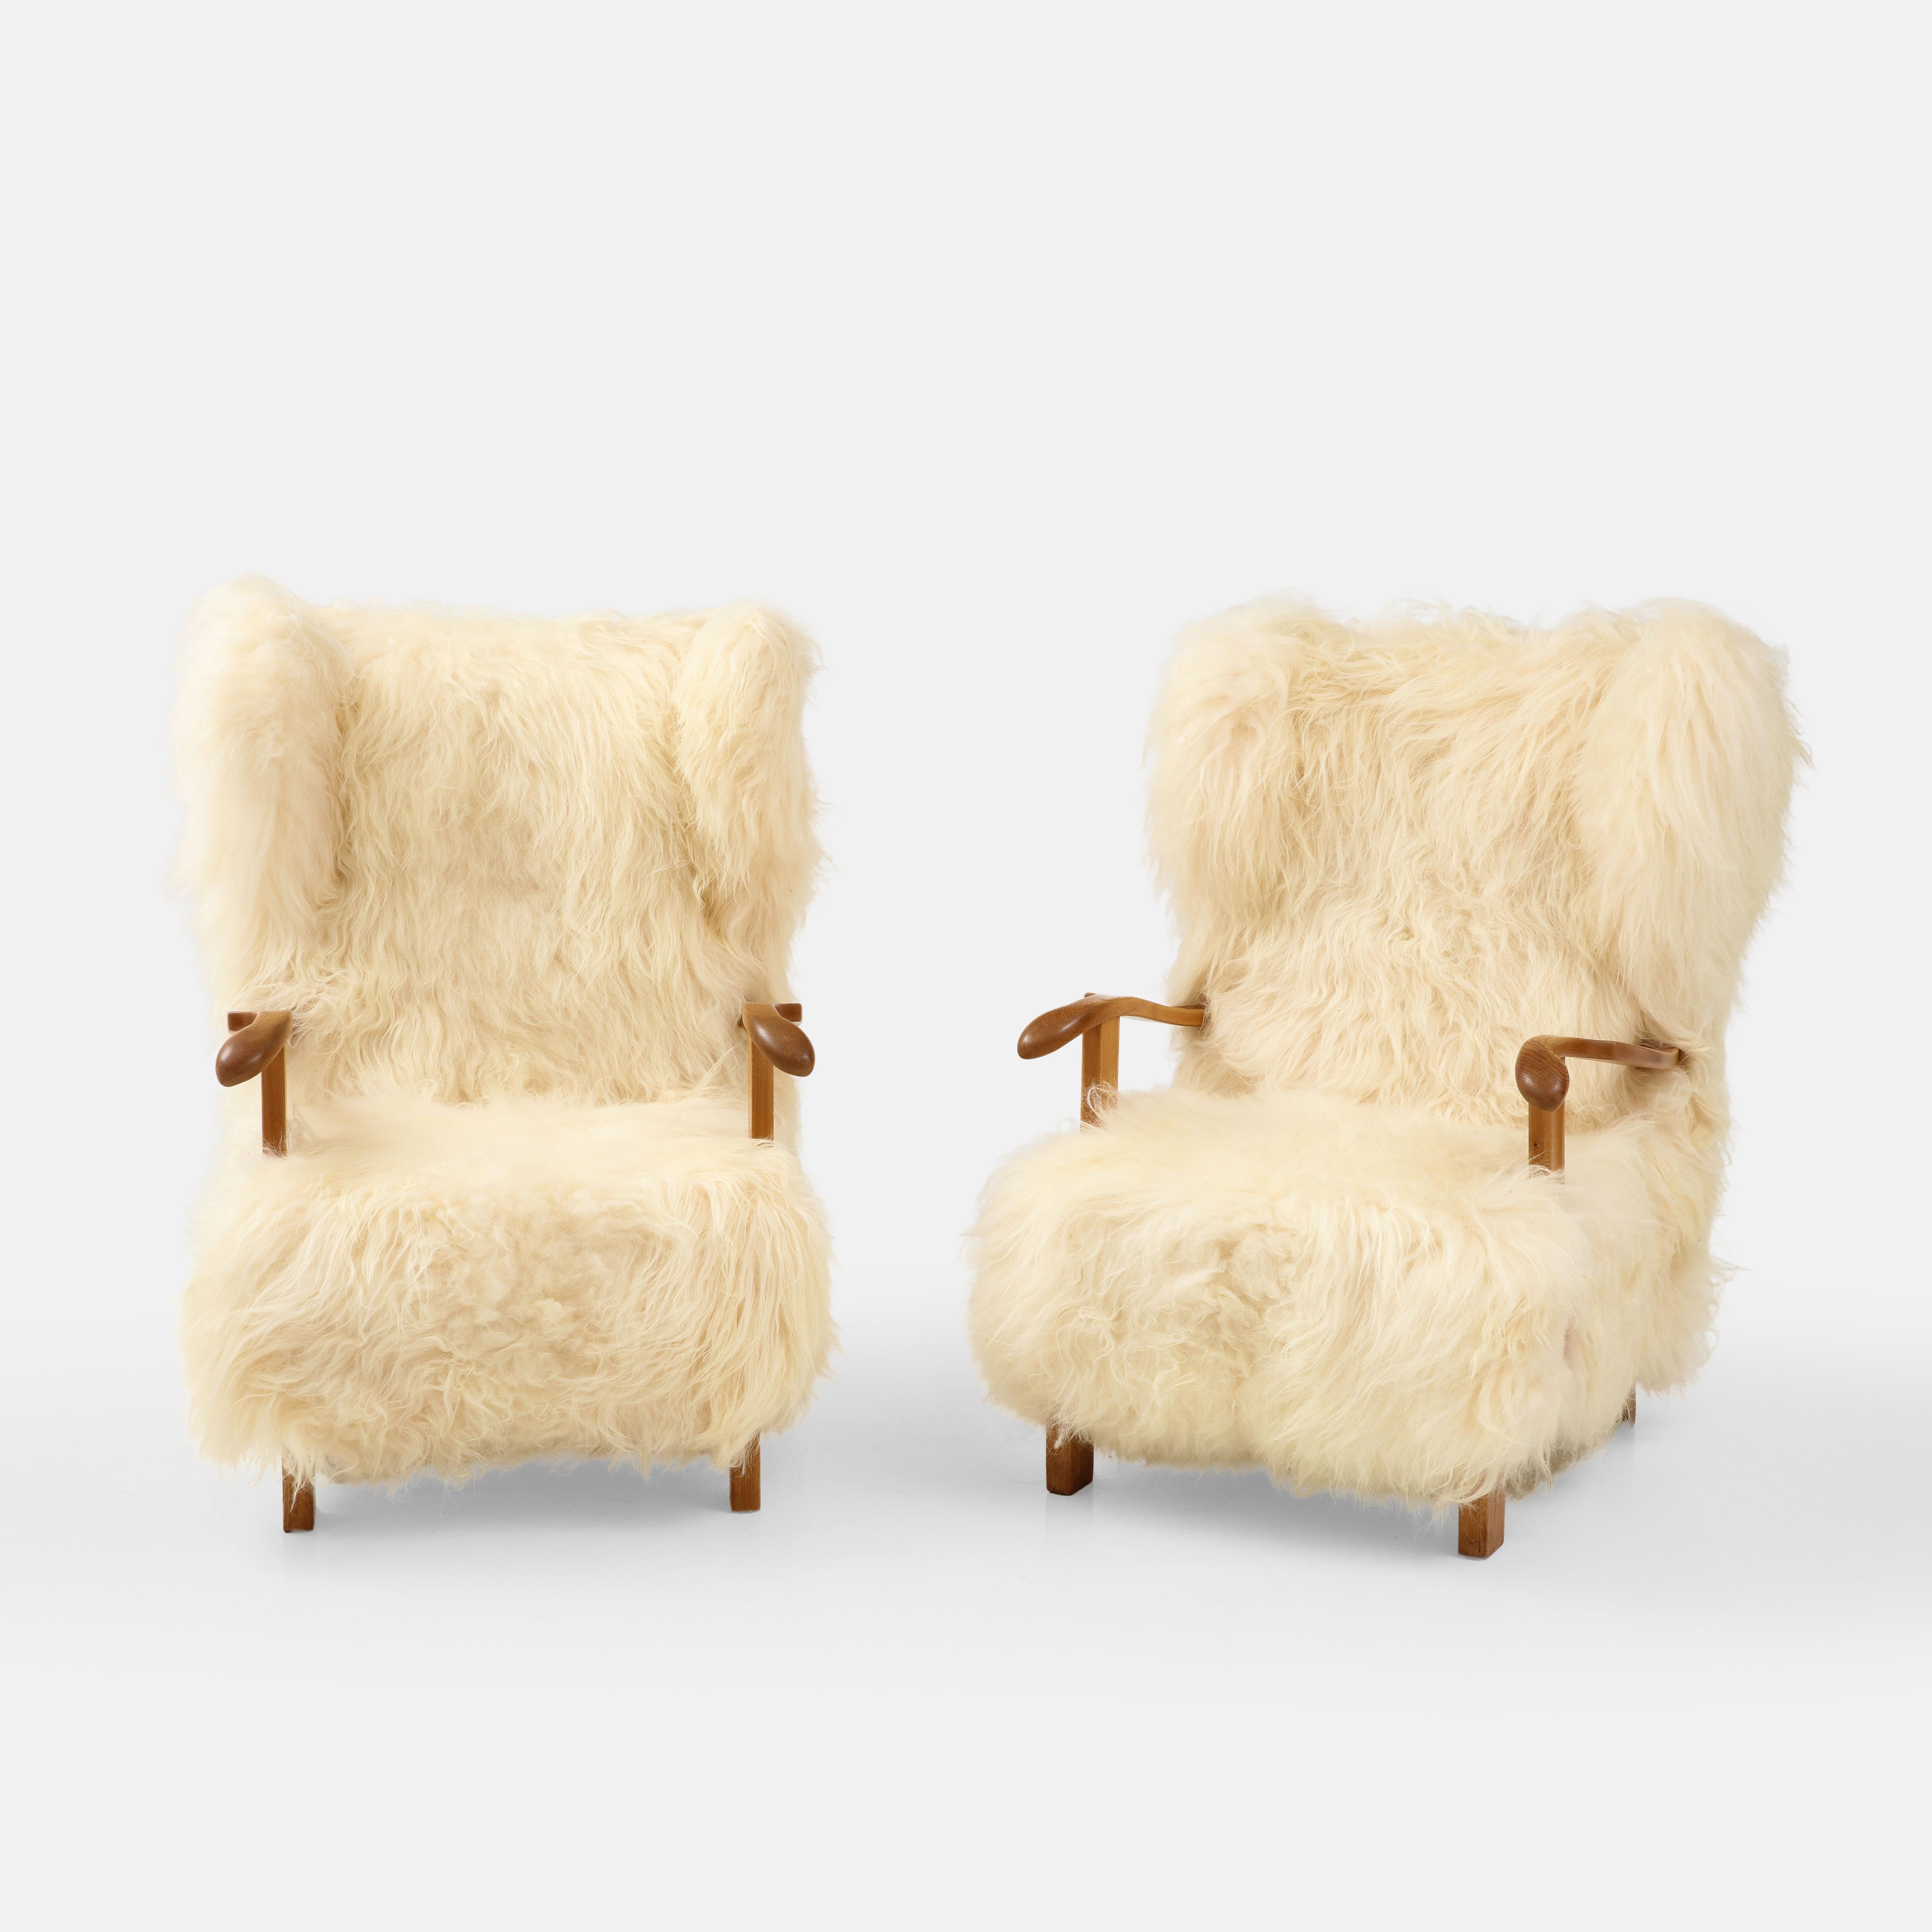 Fritz Hansen seltenes Paar großer Ohrensessel Modell 1582 mit Buchenholzrahmen und luxuriöser Schafsfellpolsterung, Dänemark, 1930er Jahre.  Diese unglaublich schicken frühen dänischen Sessel oder Sessel haben großzügige Proportionen, einschließlich